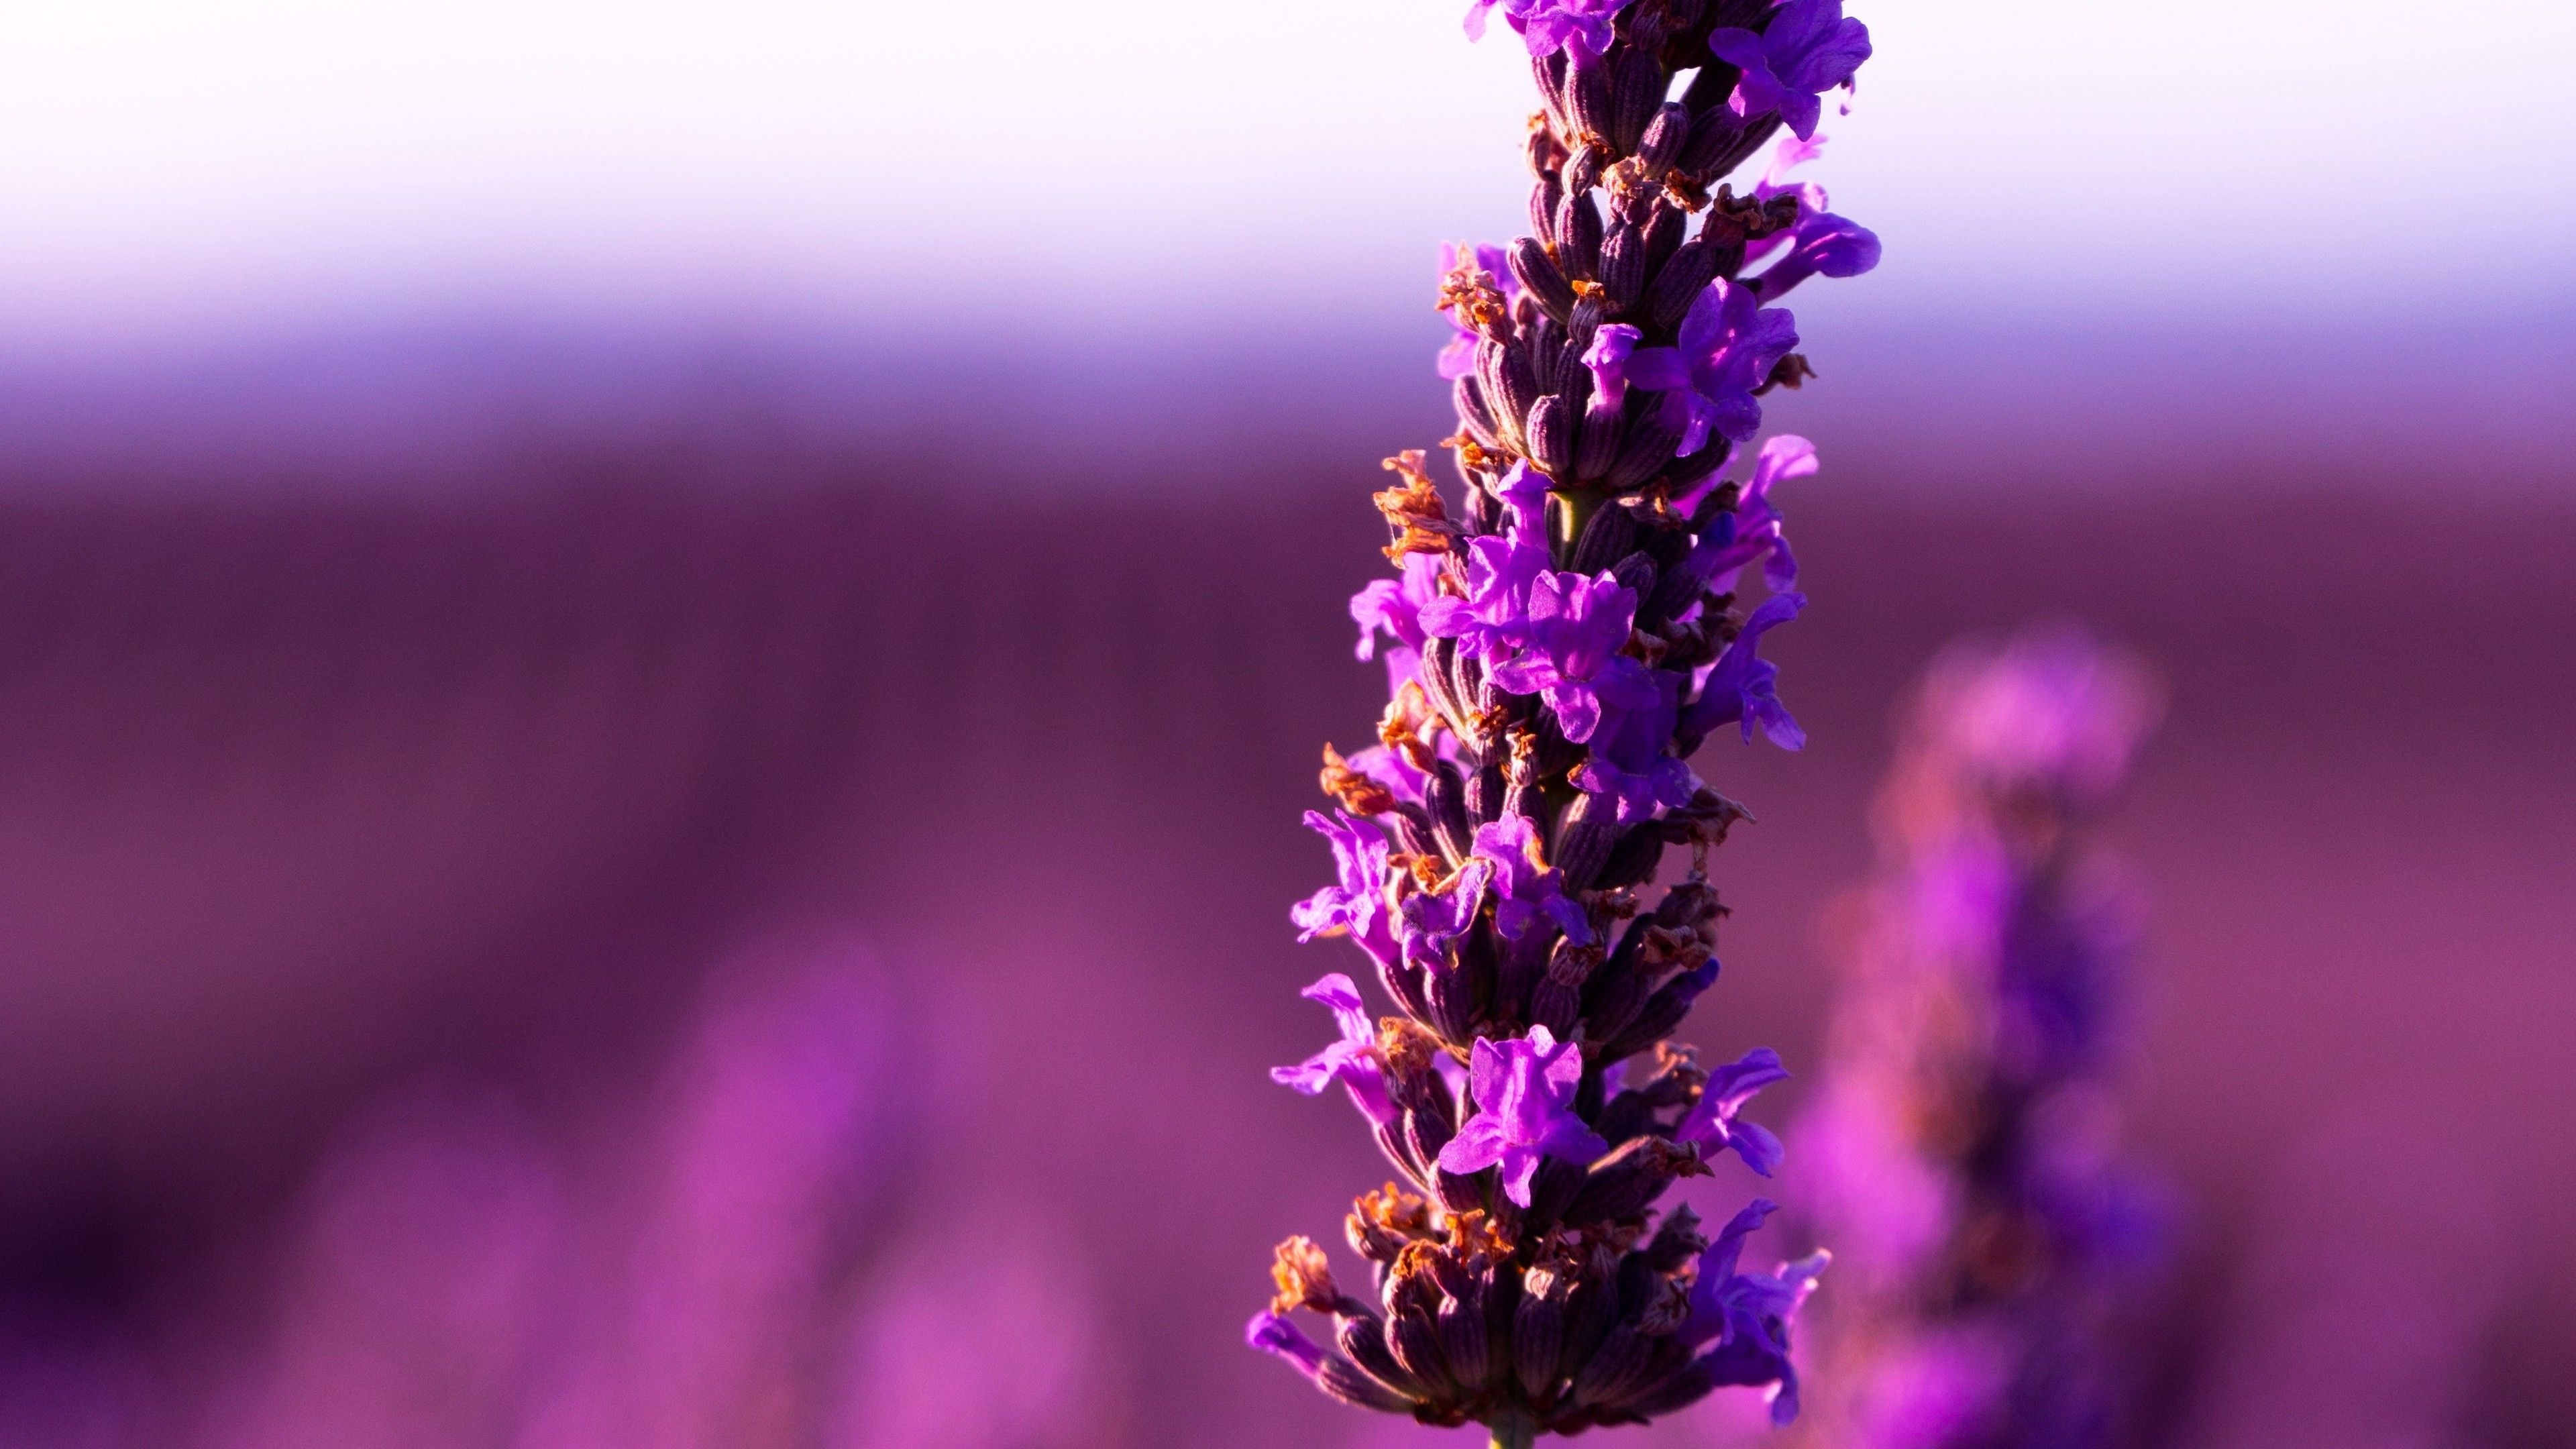 Lavender flower, Floral beauty, Purple blossoms, Nature's wonder, 3840x2160 4K Desktop